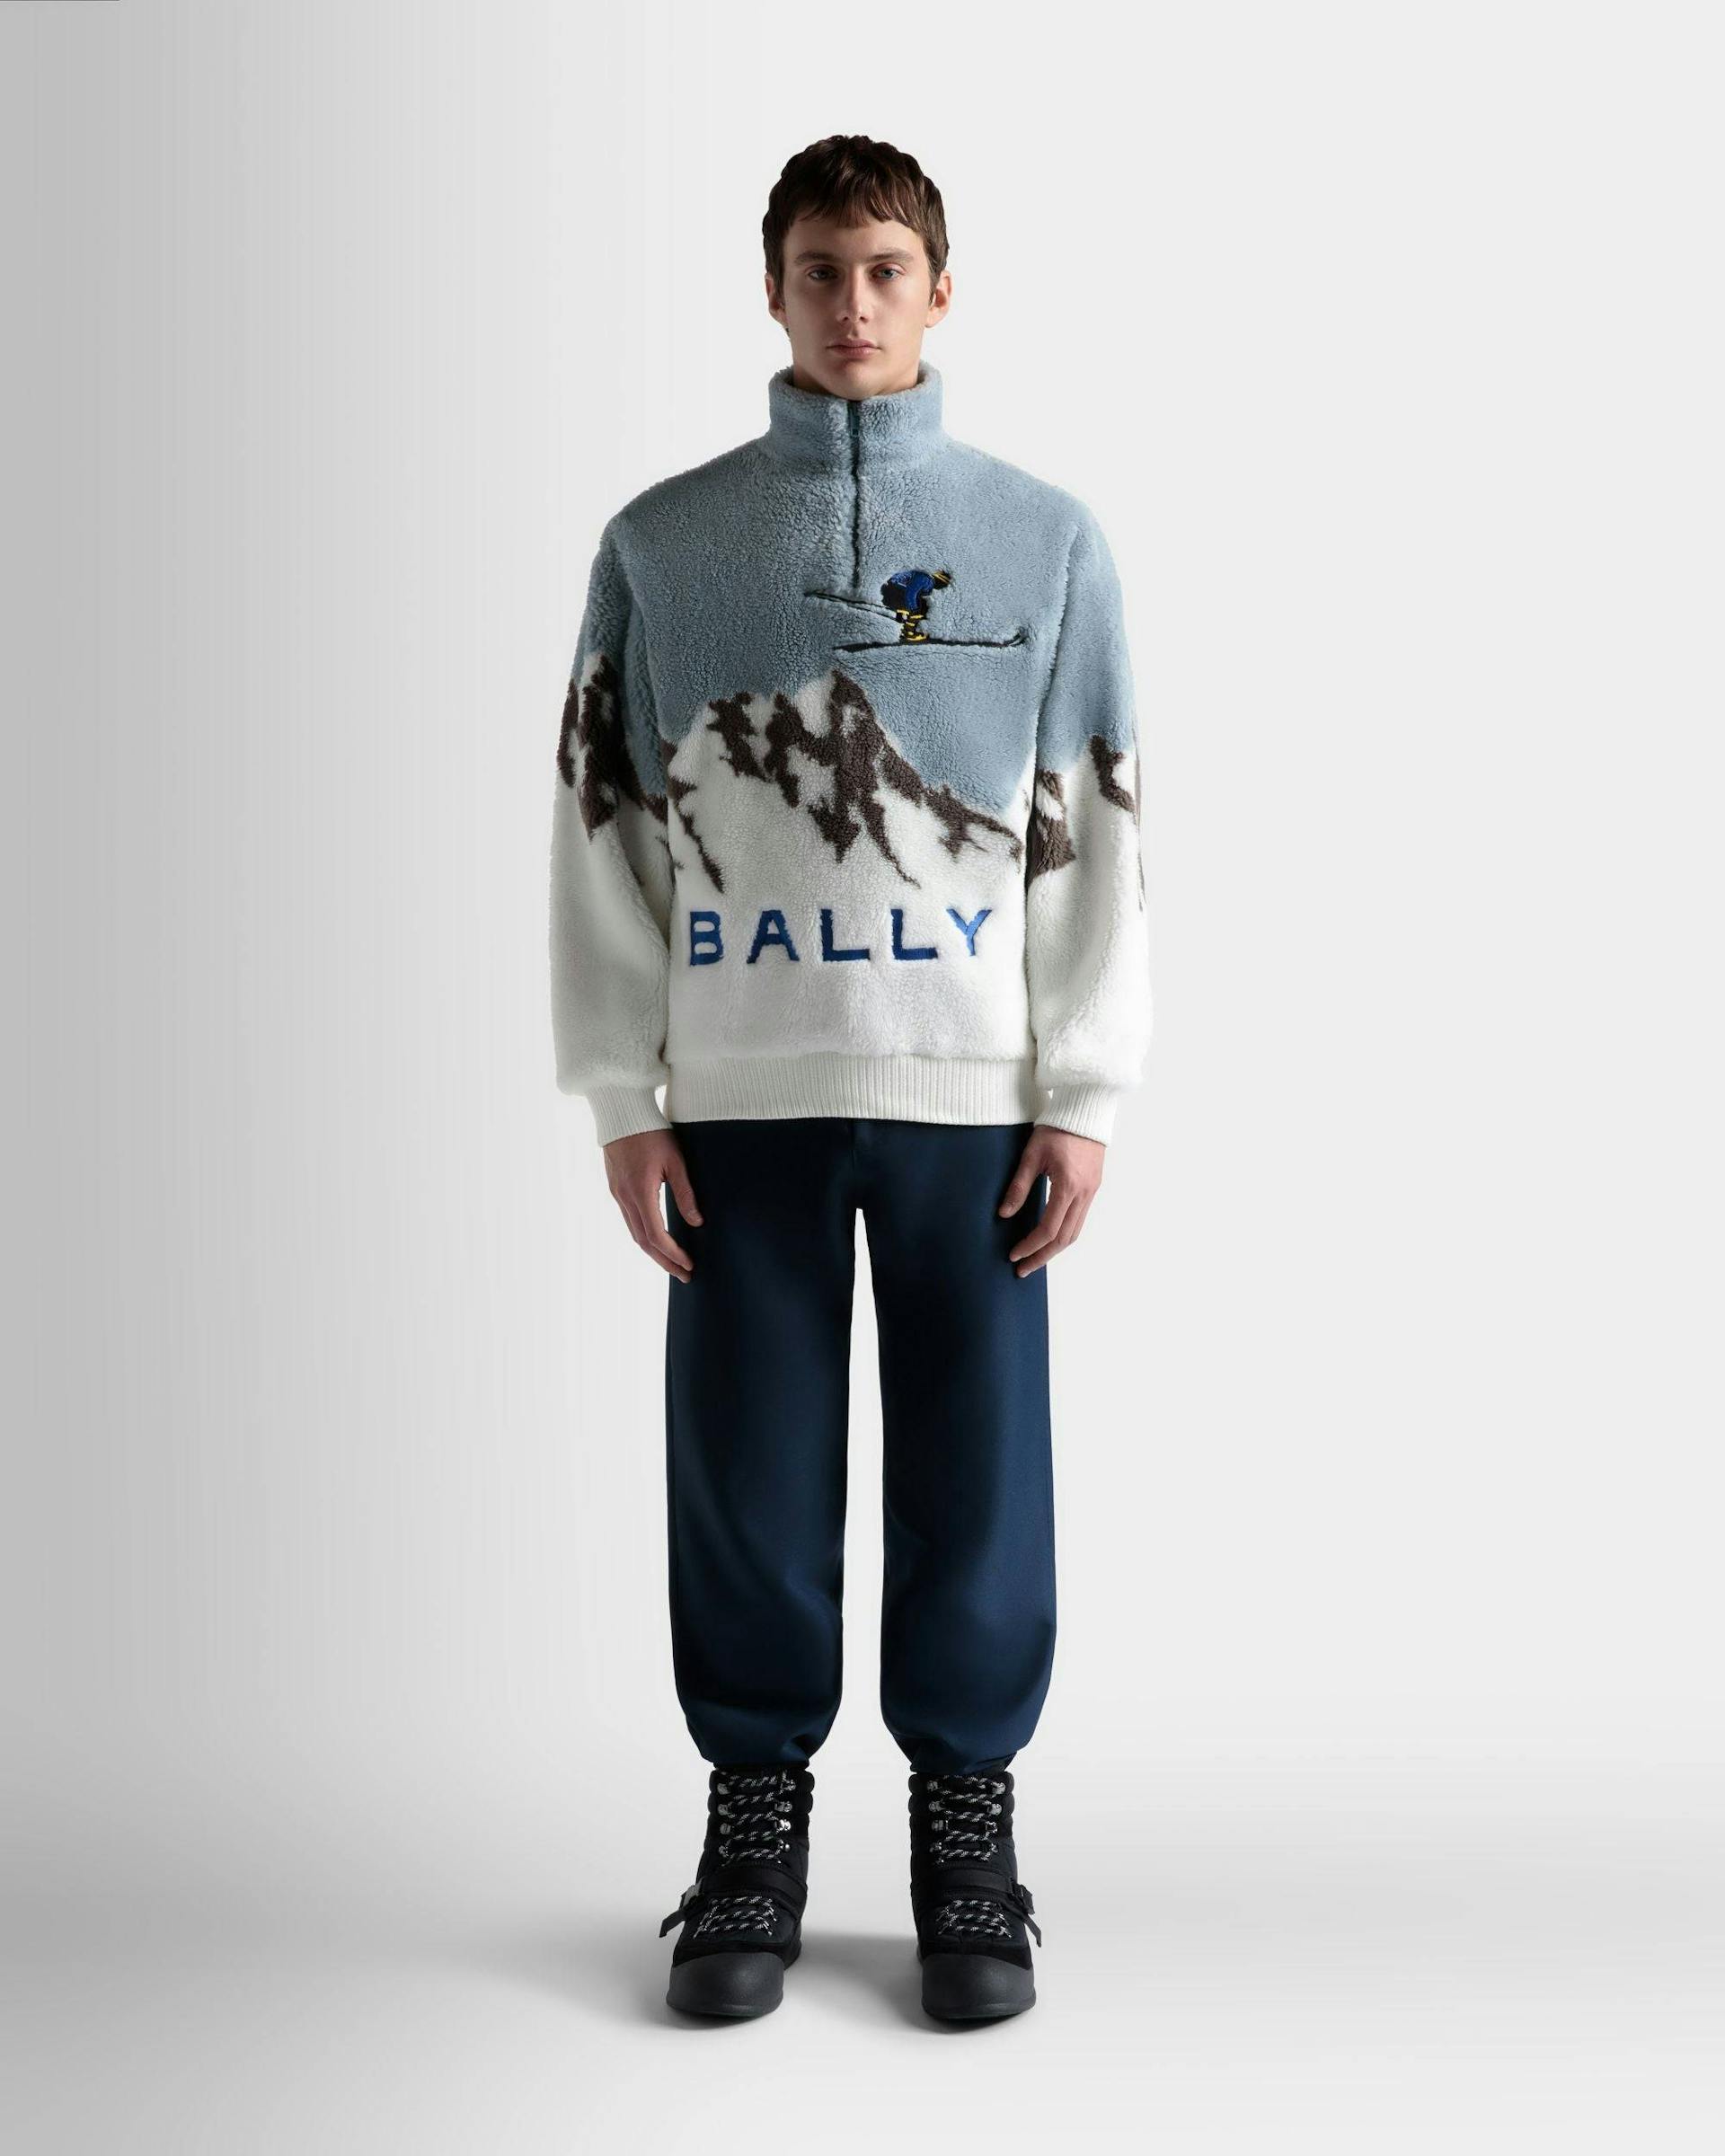 Men's Sweatshirt In Light Blue And White Sherpa Fleece | Bally | On Model Front